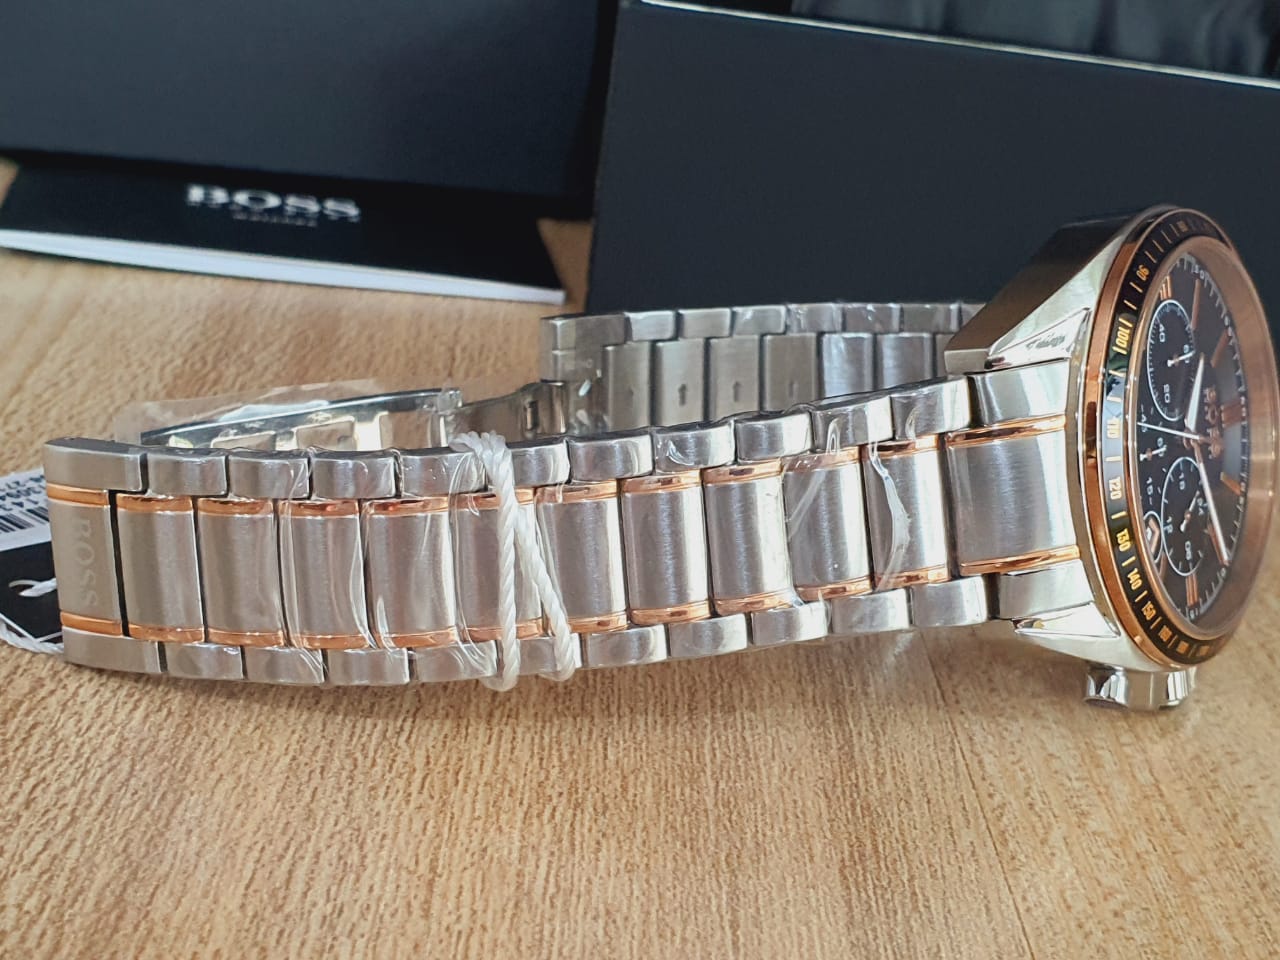 Hugo Boss Men’s Chronograph Quartz Stainless Steel Black Dial 47mm Watch 1513094